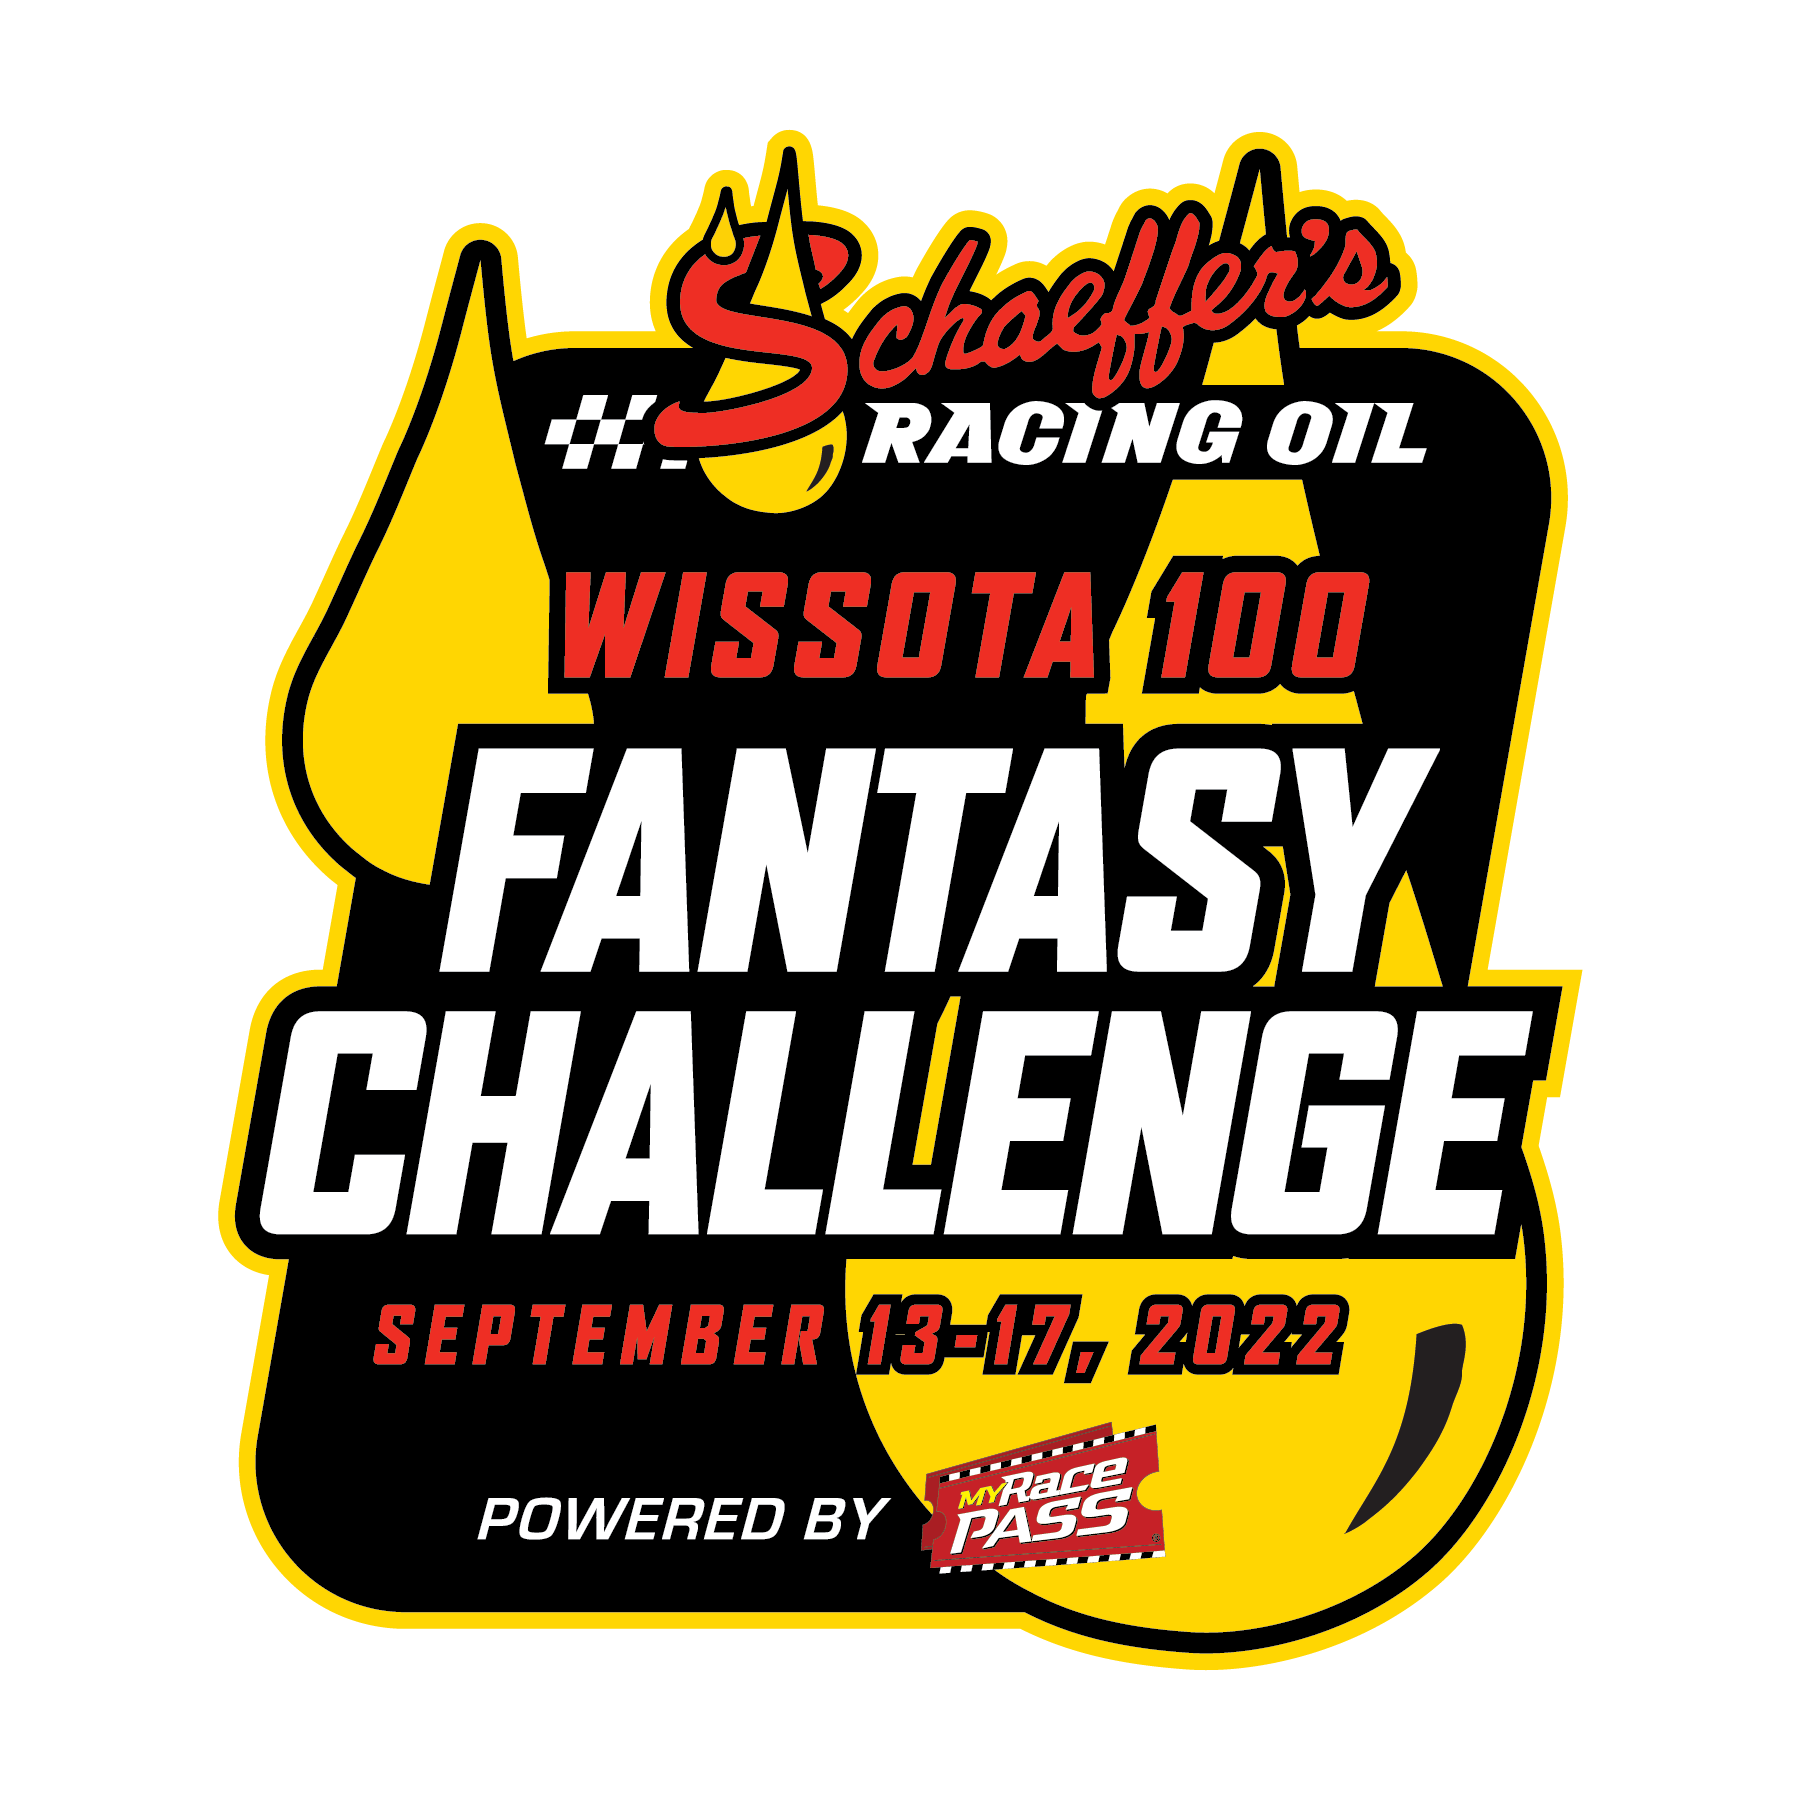 Schaeffer's Oil WISSOTA 100 Fantasy Racing Challenge